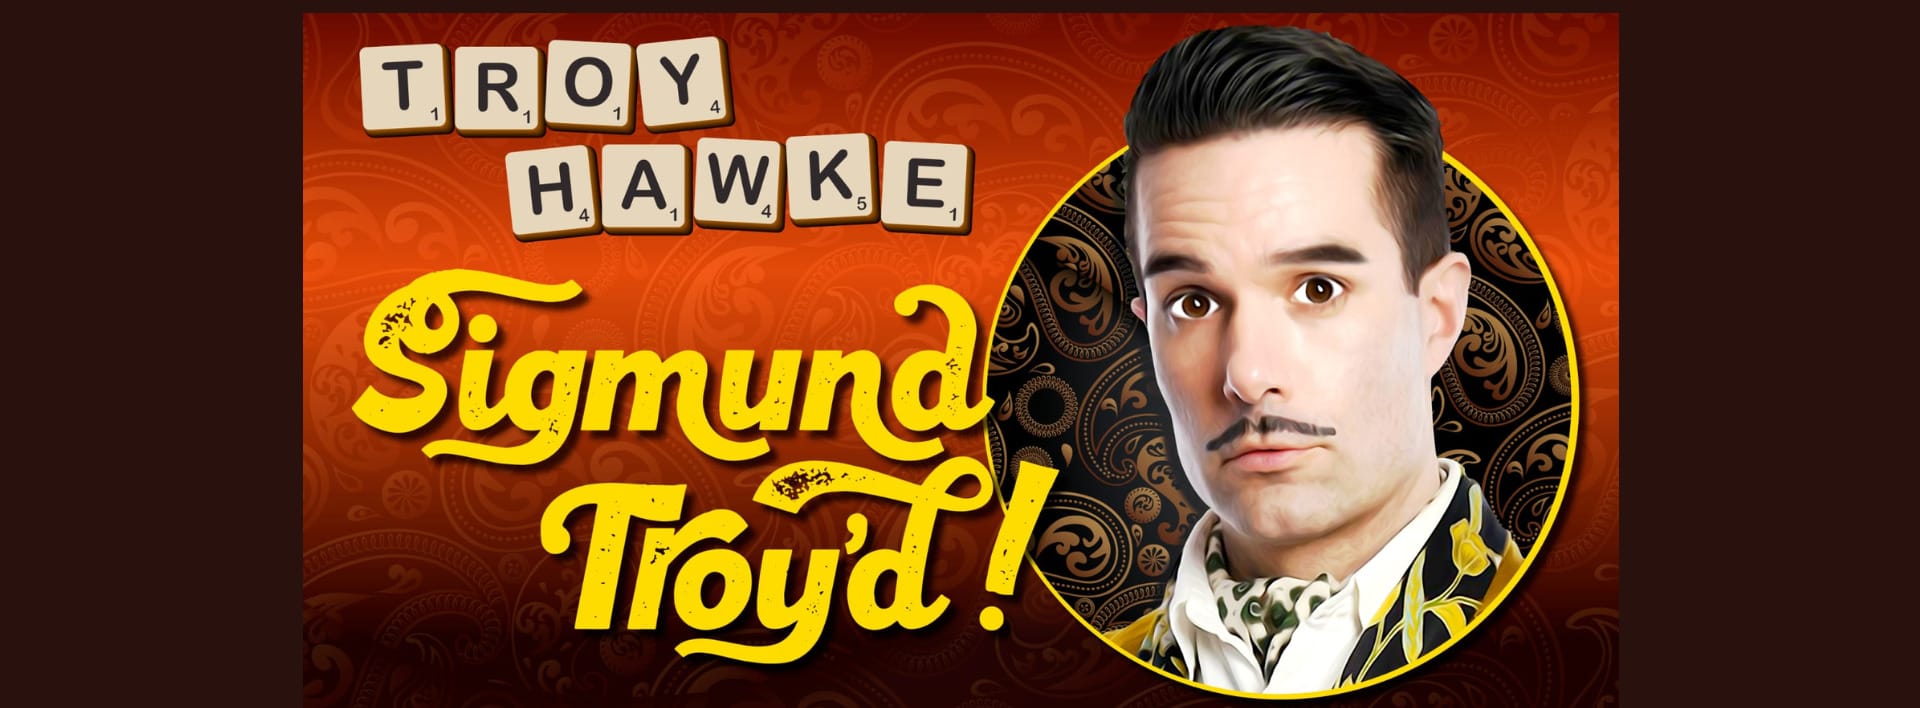 Troy Hawke: Sigmund Troy’d!